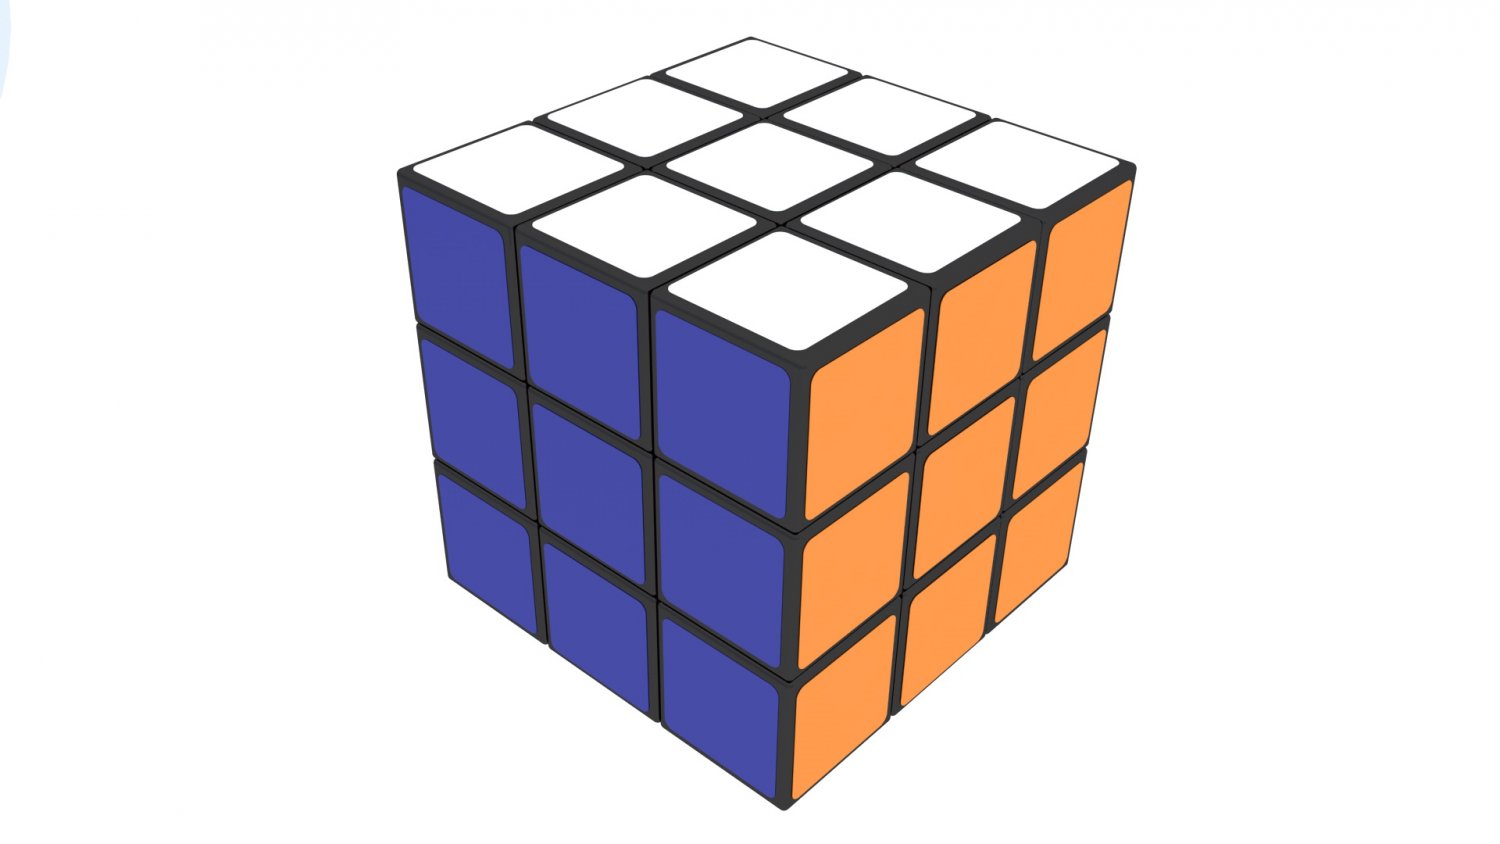 Cube model. Куб 3х3х3. Модель кубика. Кубик Рубика в перспективе. Кубик Рубика на белом фоне.